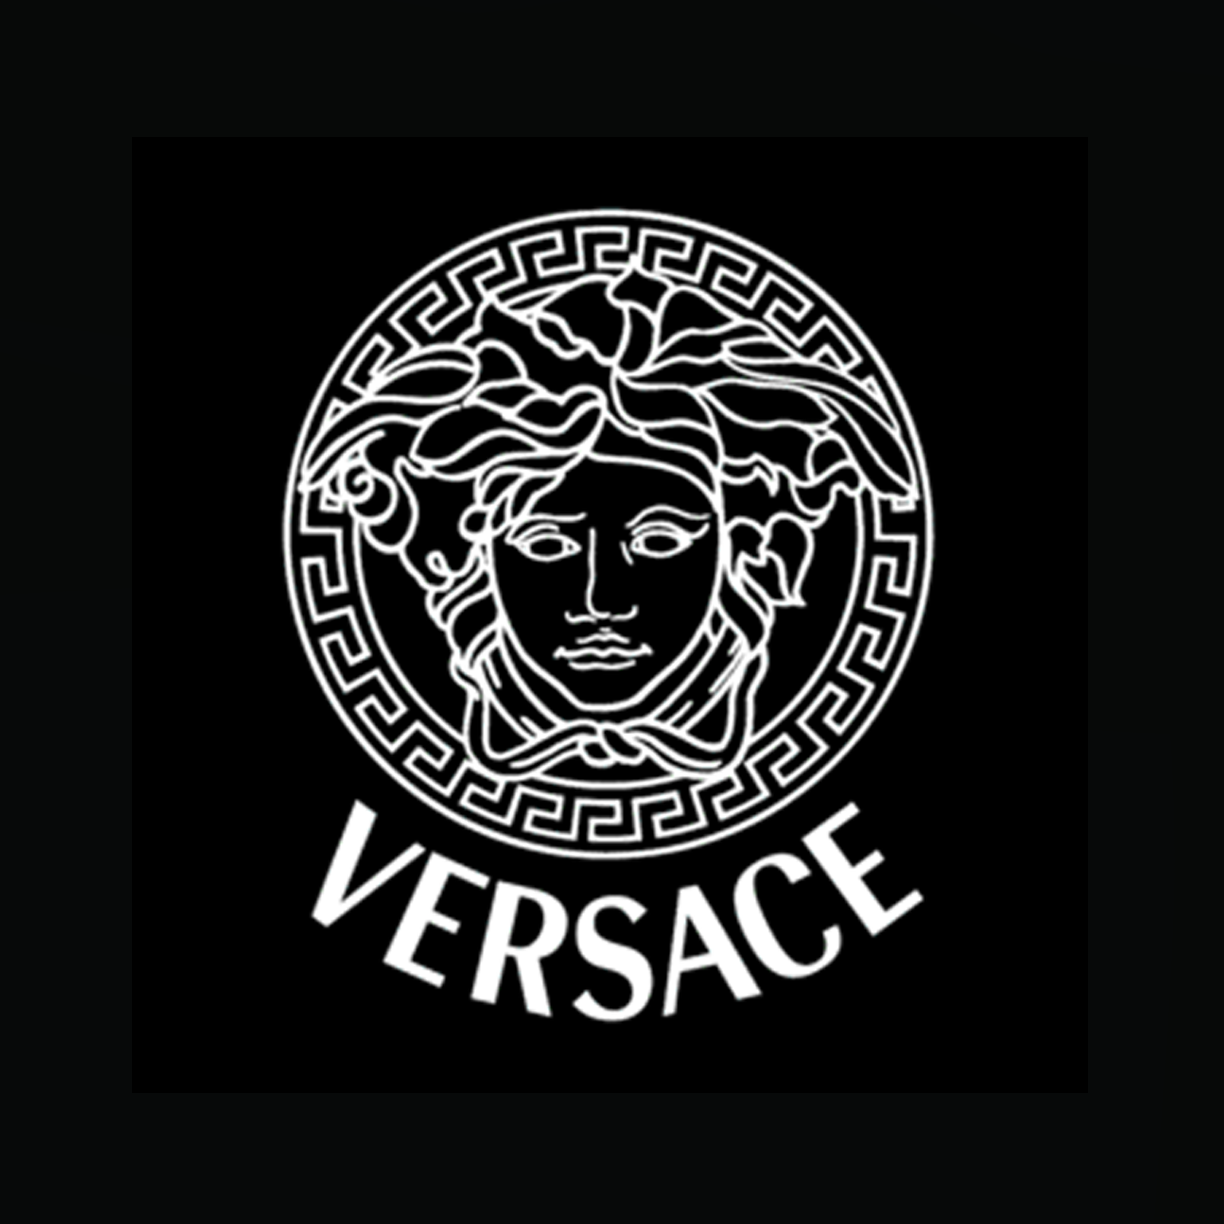 Versace 3D wallpaper HQ Wallpaper Download 2022